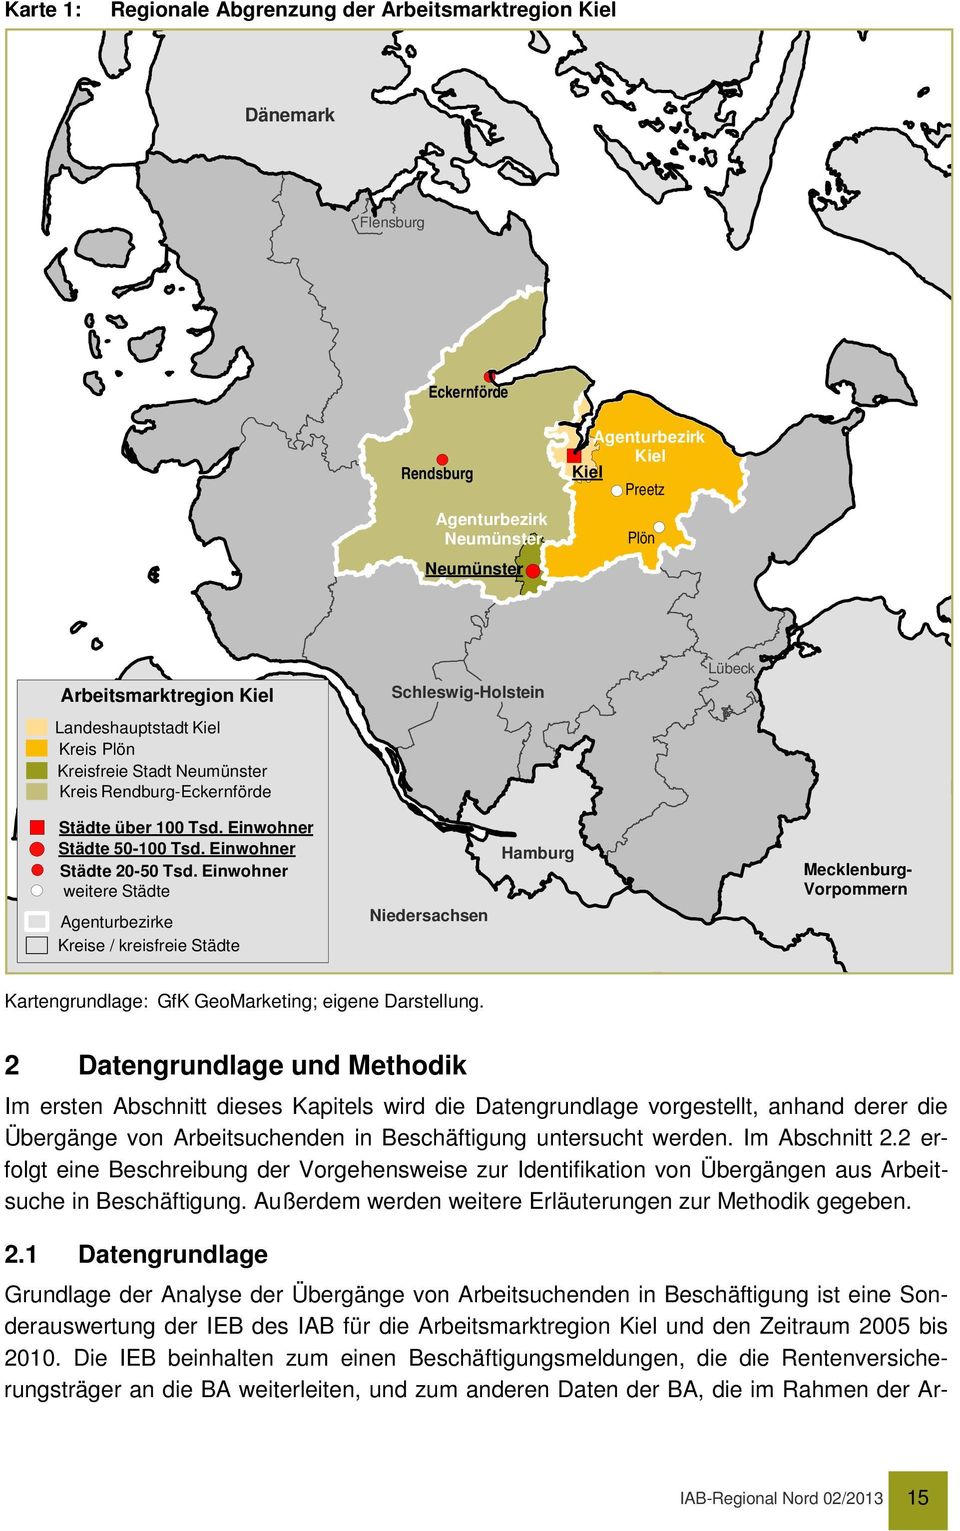 Einwohner weitere Städte Agenturbezirke Kreise / kreisfreie Städte Niedersachsen Hamburg Mecklenburg- Vorpommern Kartengrundlage: GfK GeoMarketing; eigene Darstellung.